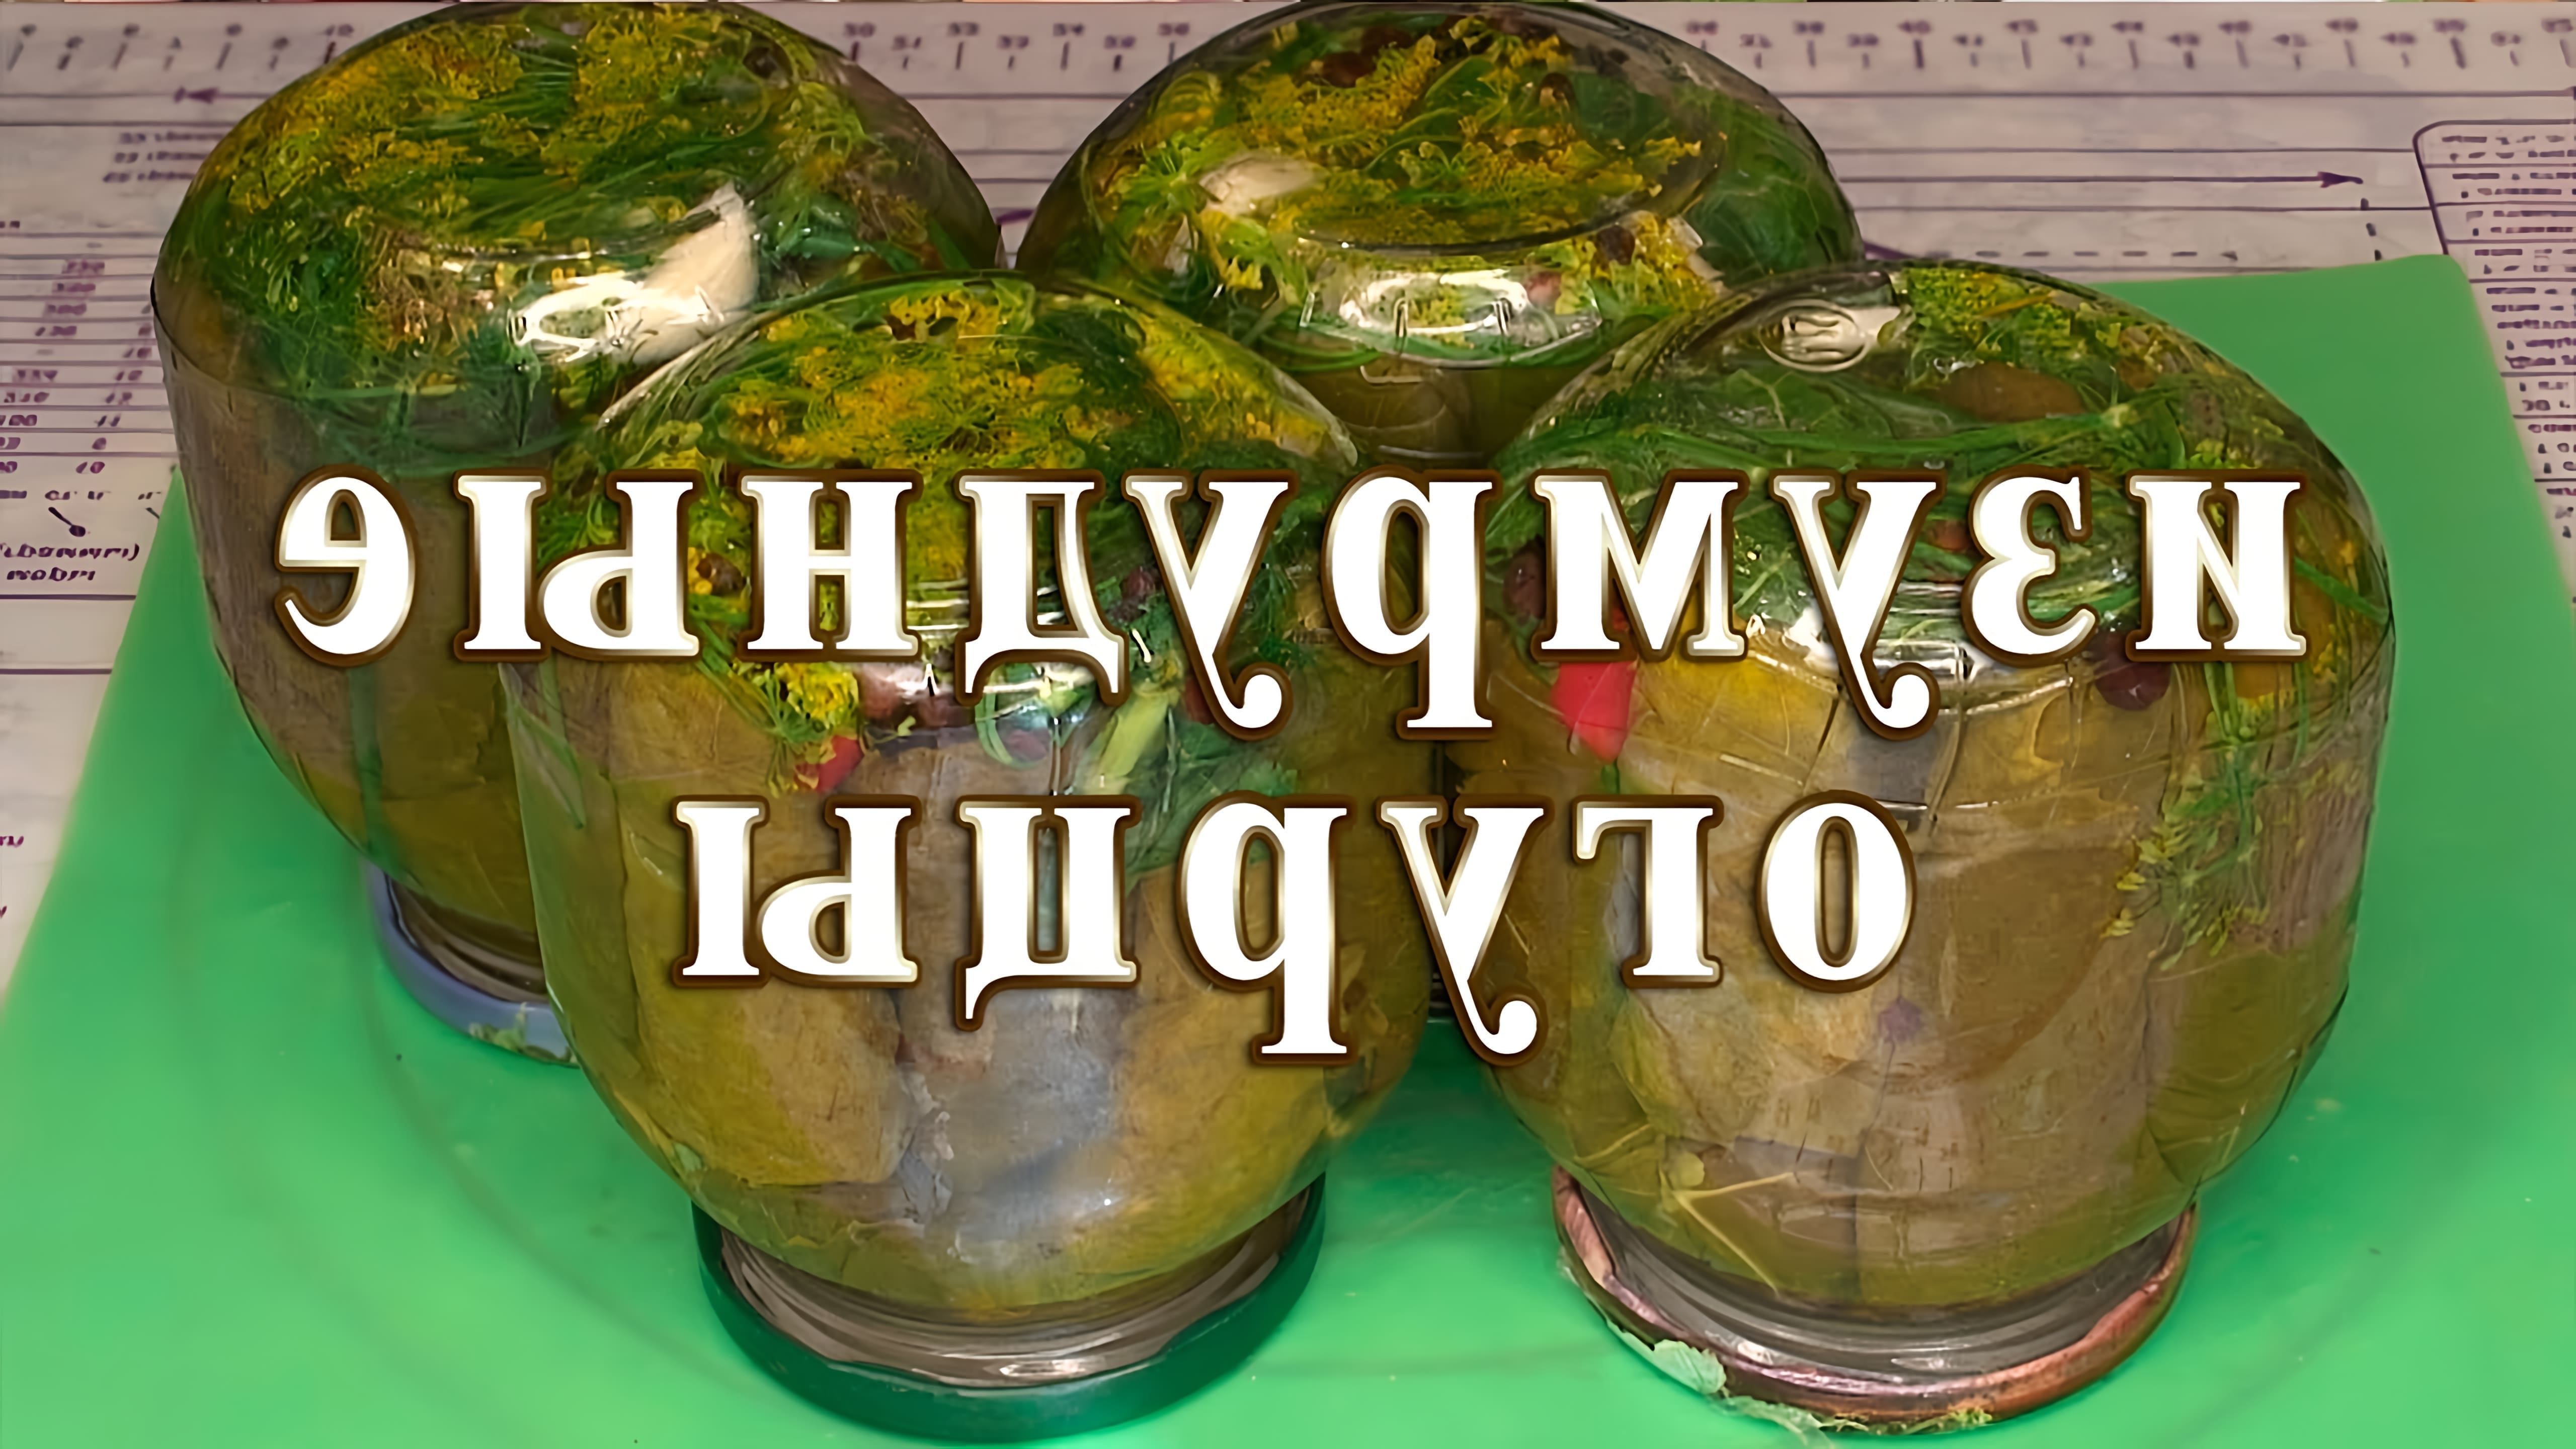 В этом видео демонстрируется рецепт приготовления изумрудных огурцов в виноградных листьях для праздничного стола